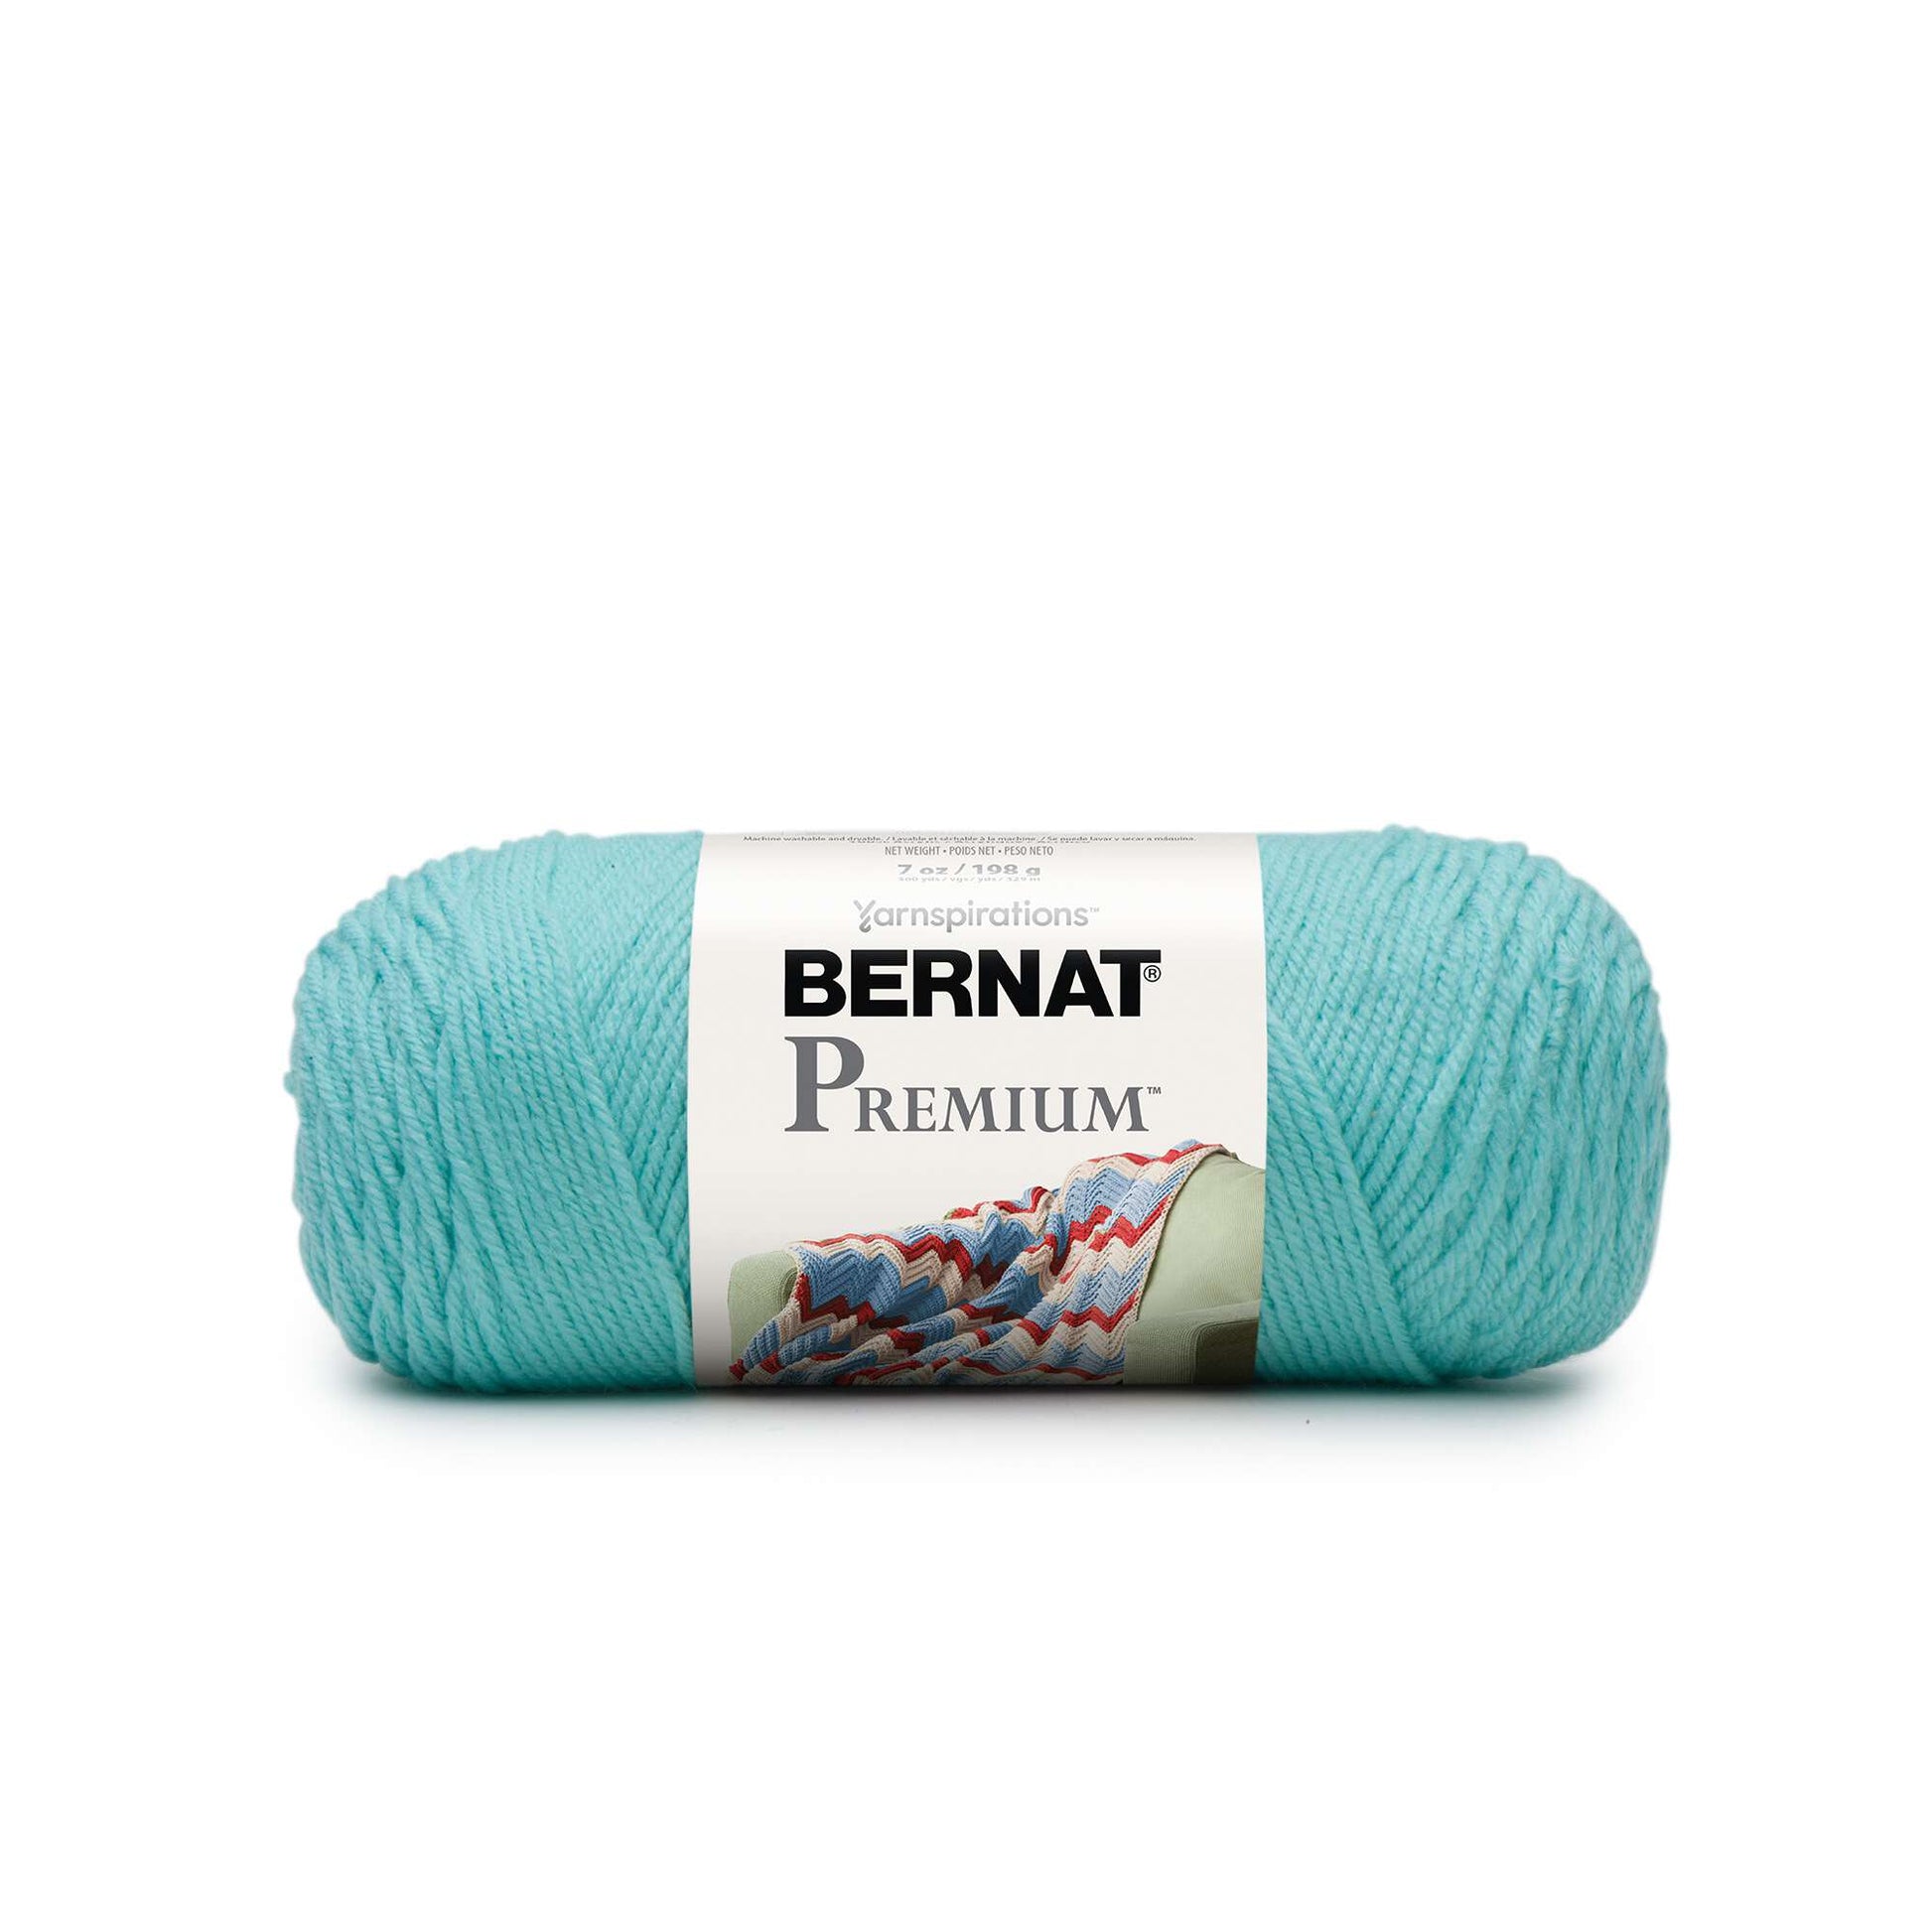 Premium Photo  Ball of red wool yarn